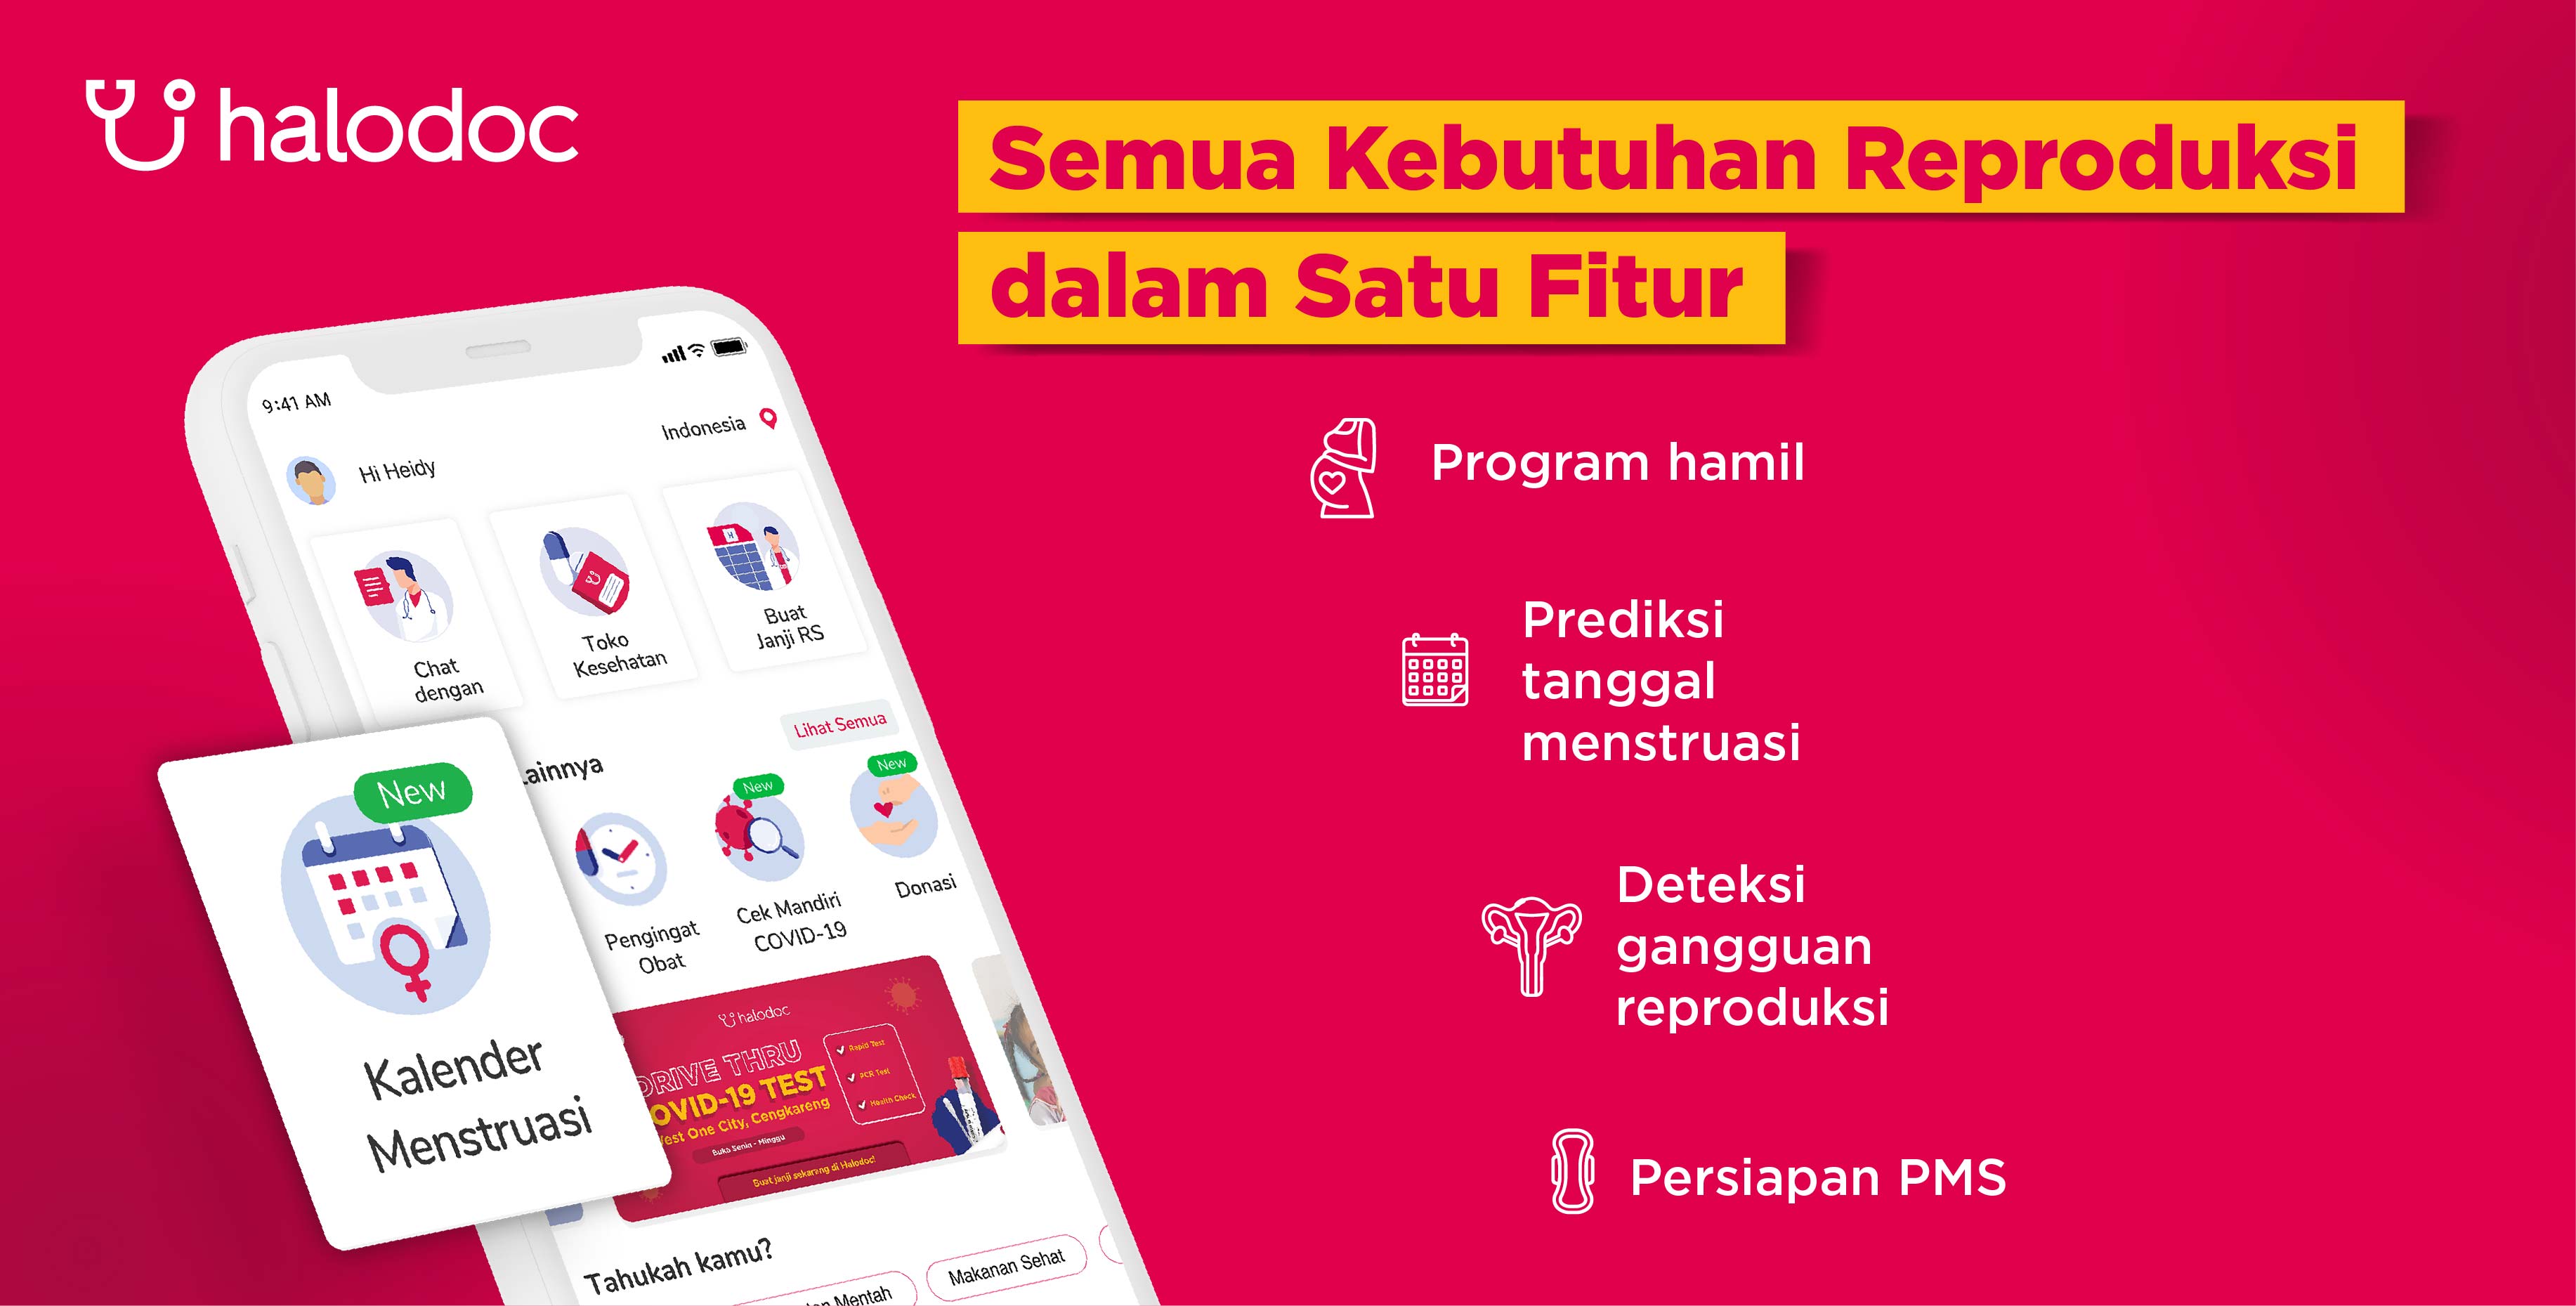 Geeft menstruatiekalender-functie vrij, wordt de meest complete gezondheidsapplicatie in Indonesië